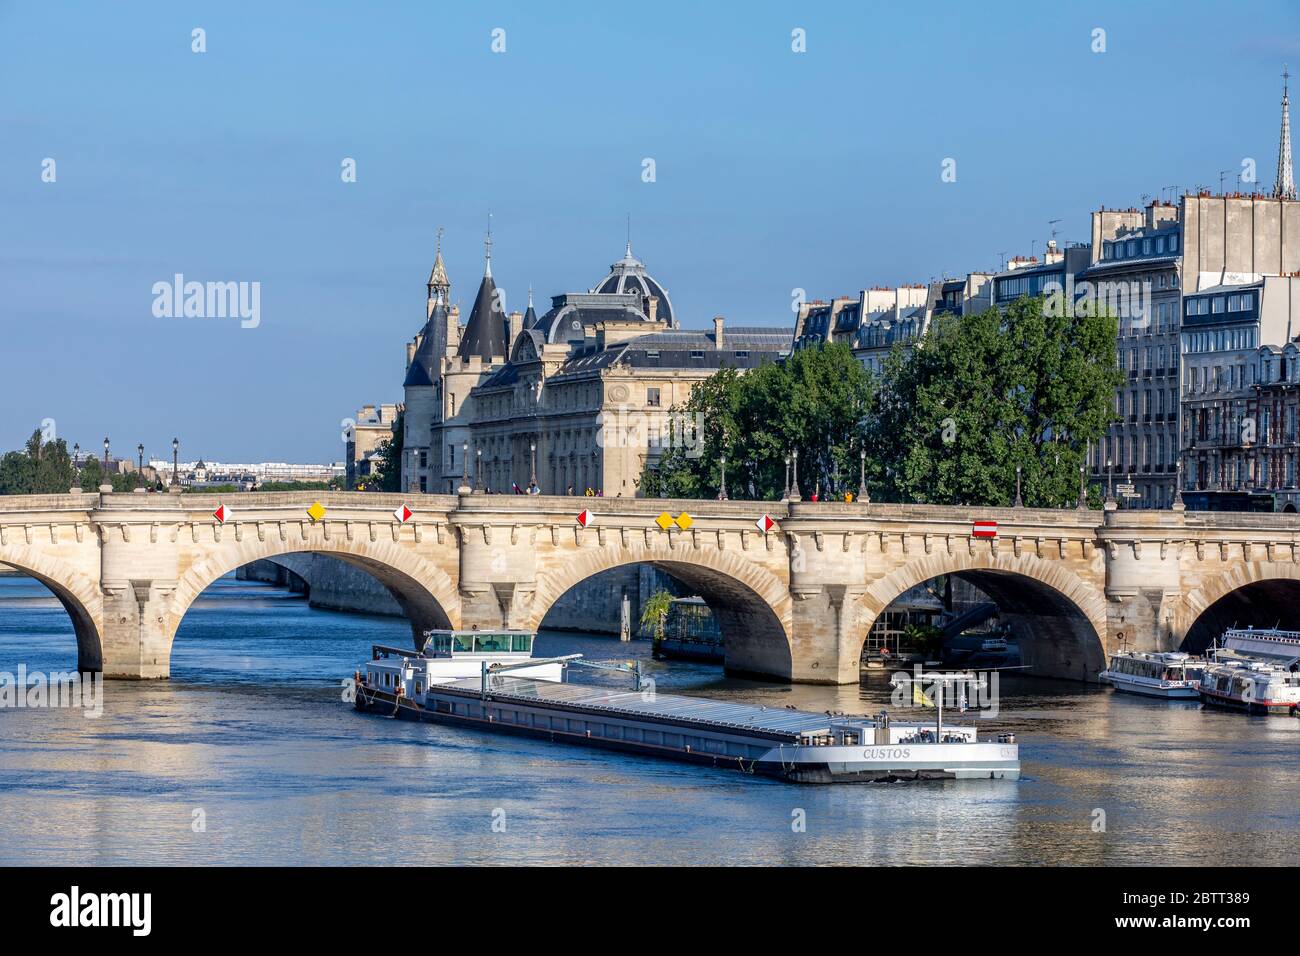 Parigi, Francia - 14 maggio 2020: Vista del Pont neuf, il ponte più antico di Parigi e Conciergerie sullo sfondo Foto Stock